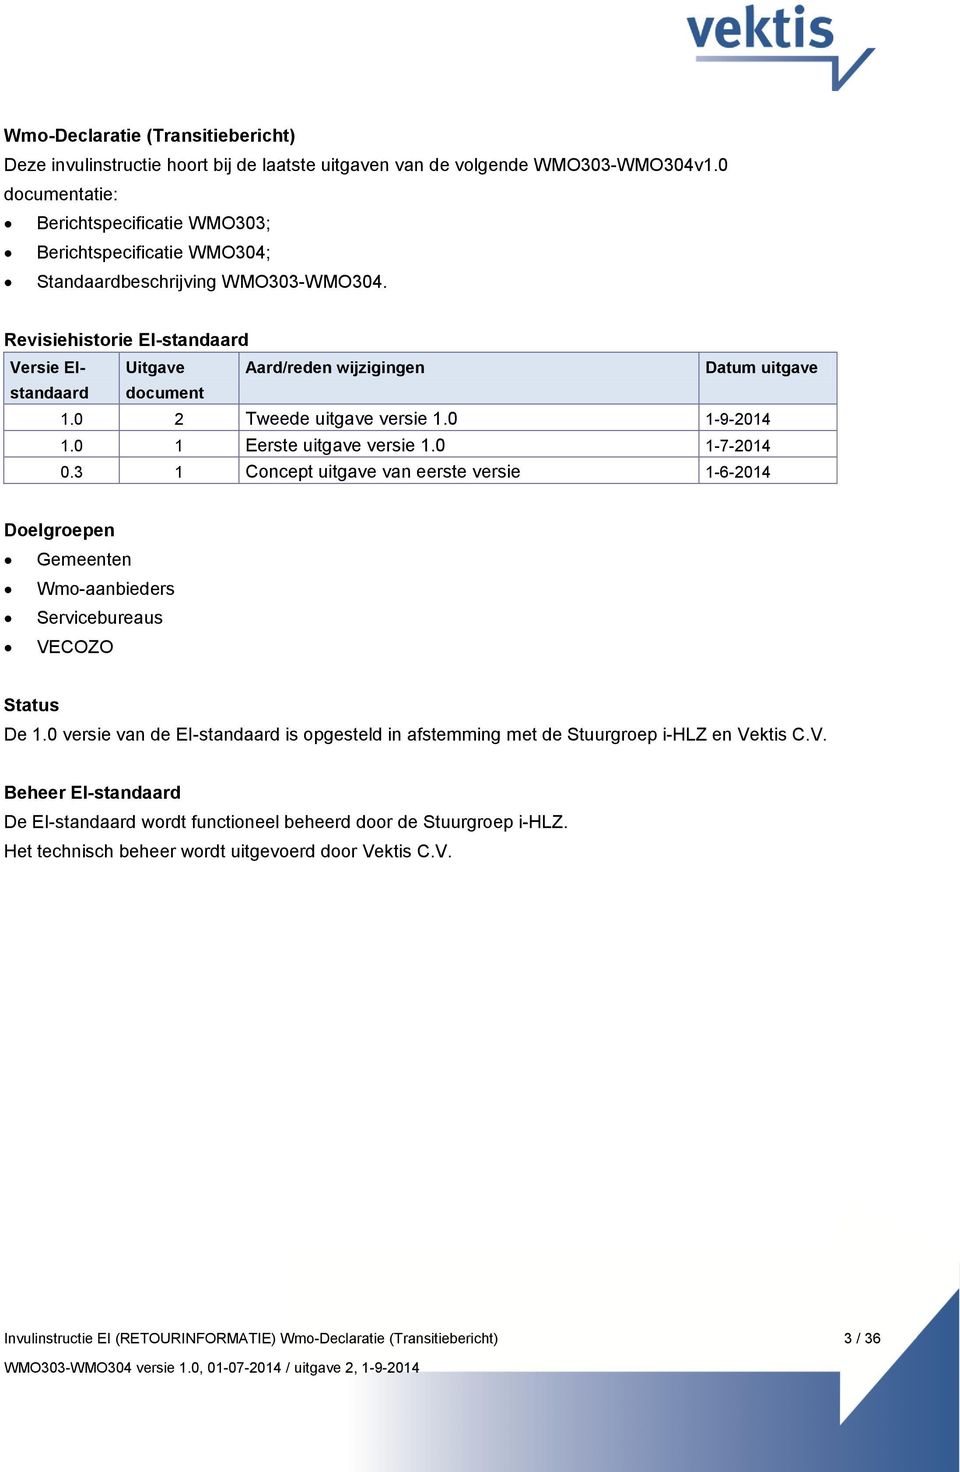 Revisiehistorie EI-standaard Versie EIstandaard Uitgave Aard/reden wijzigingen Datum uitgave document 1.0 2 Tweede uitgave versie 1.0 1-9-2014 1.0 1 Eerste uitgave versie 1.0 1-7-2014 0.